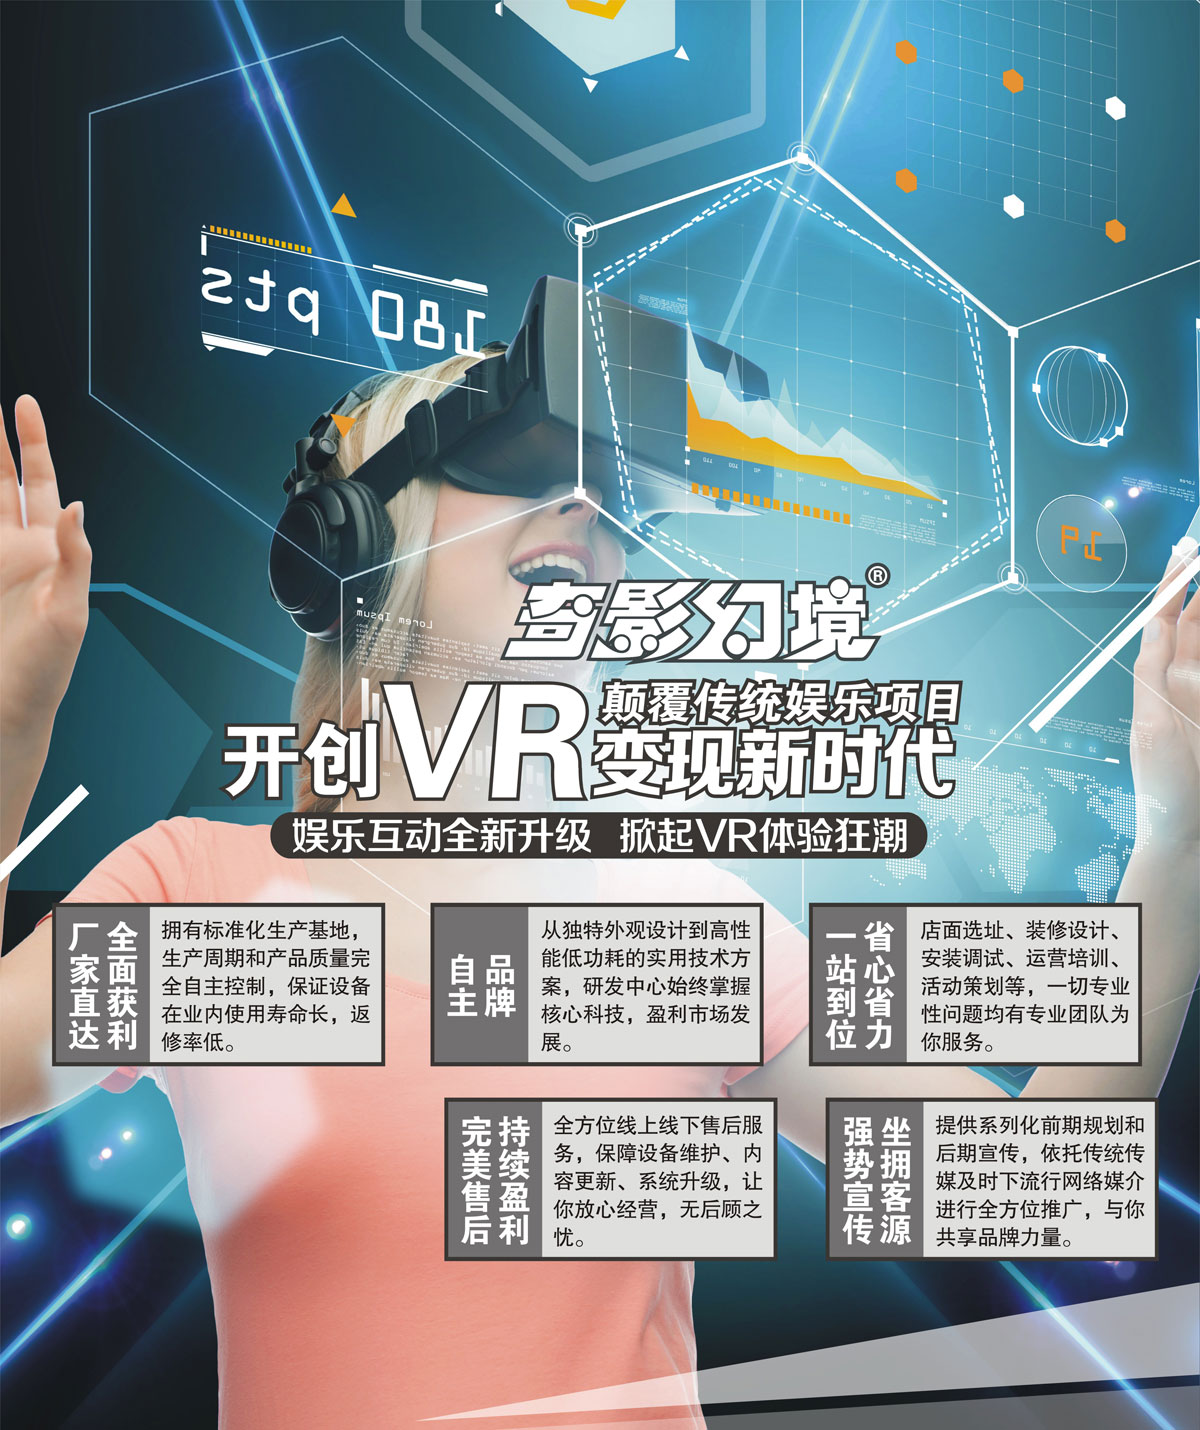 02-开创VR变现新时代颠覆传统娱乐项目.jpg